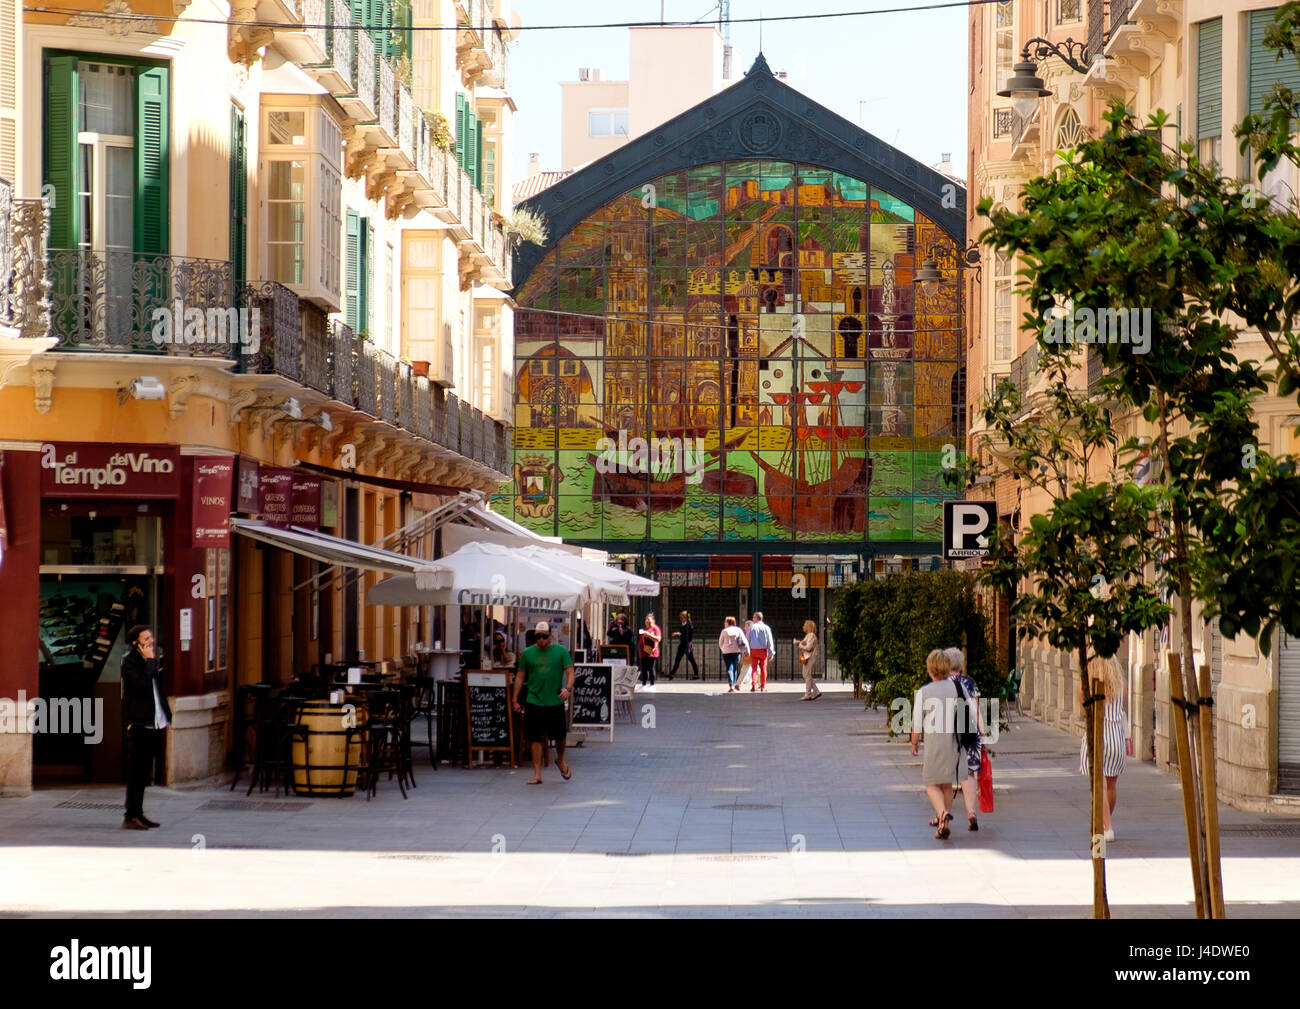 The exterior of Mercado Central de Atarazanas, Malaga, a food market in the centre of the city. Stock Photo